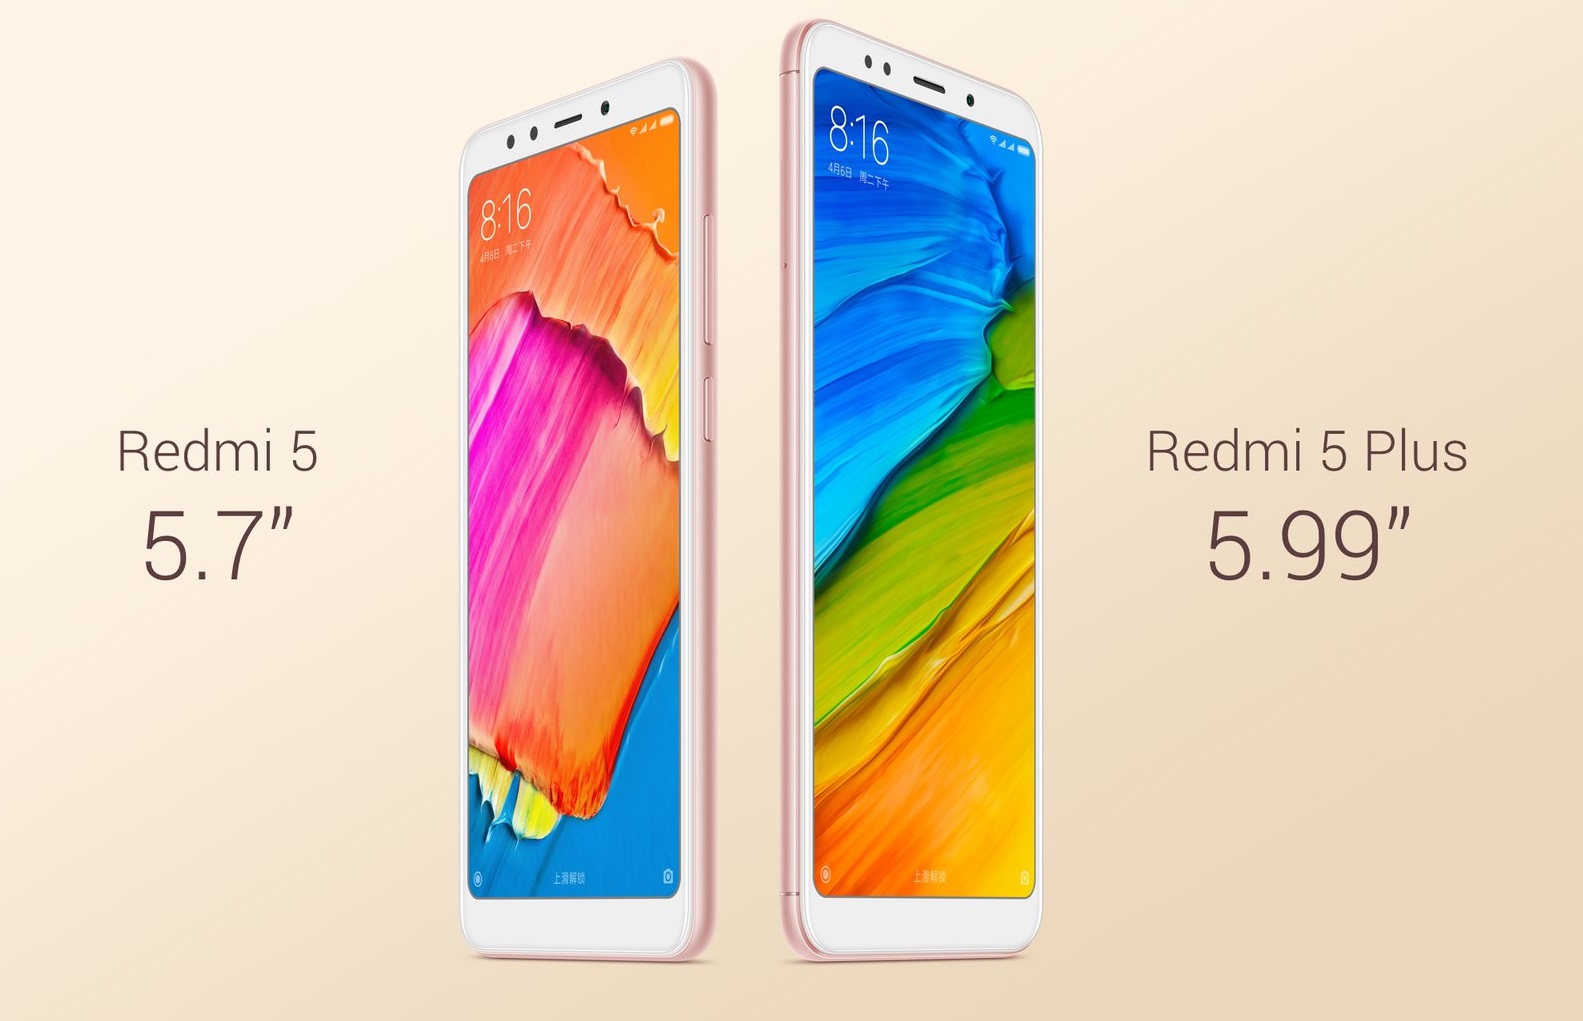 Xiaomi Redmi 5 and Redmi 5 Plus specs, price and release date